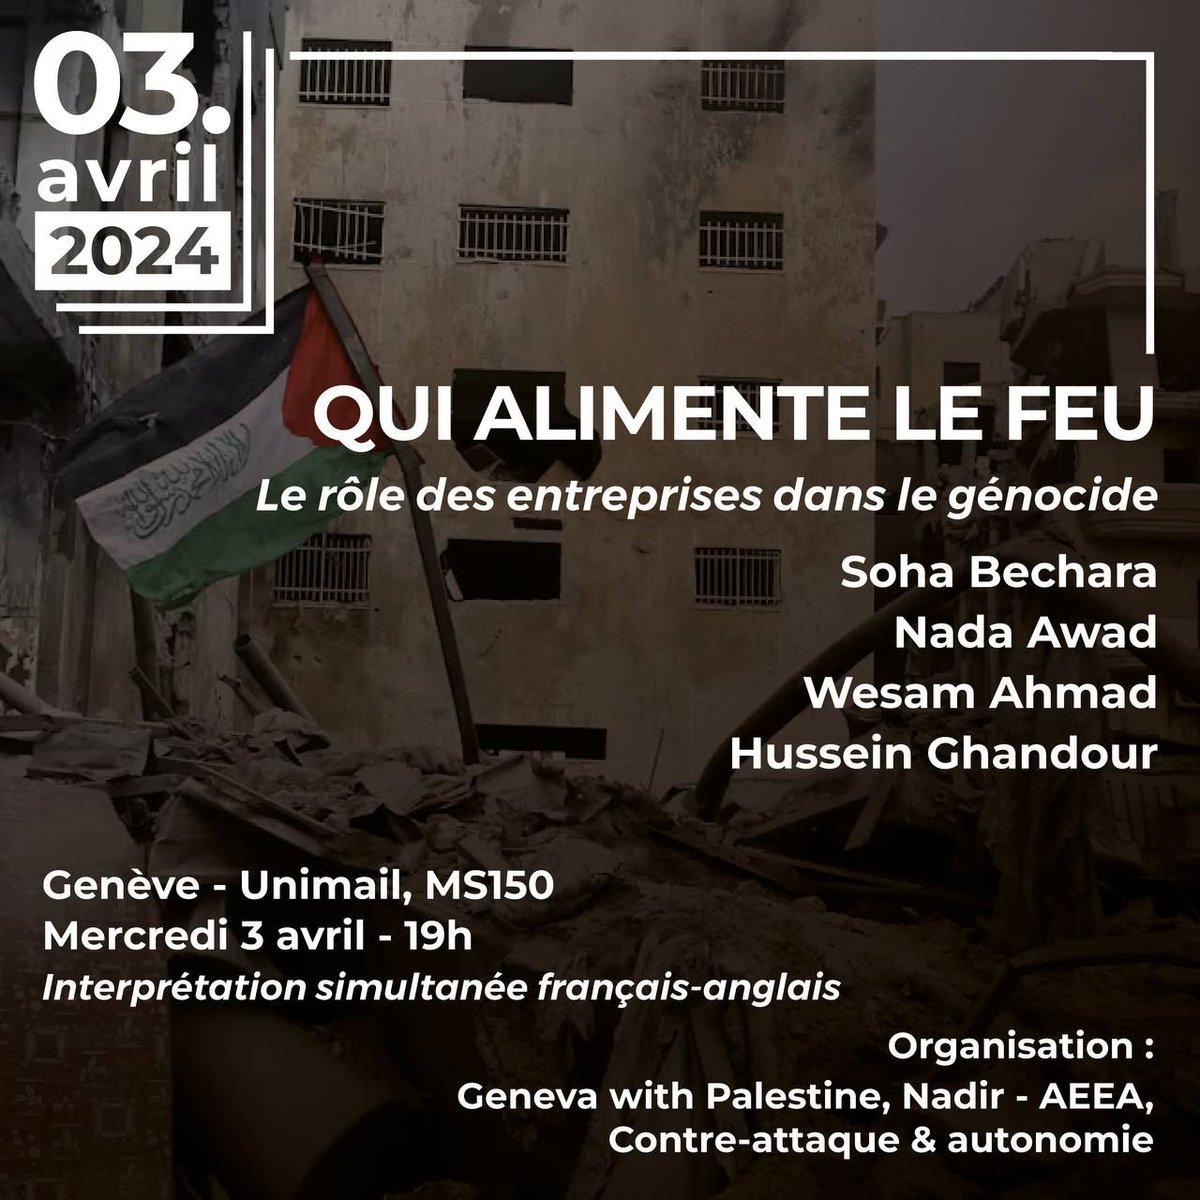 #Conférence: Qui alimente le feu, le rôle des entreprises dans le #genocide?
3 avril 2024 19h Unimail, Genève, salle MS150